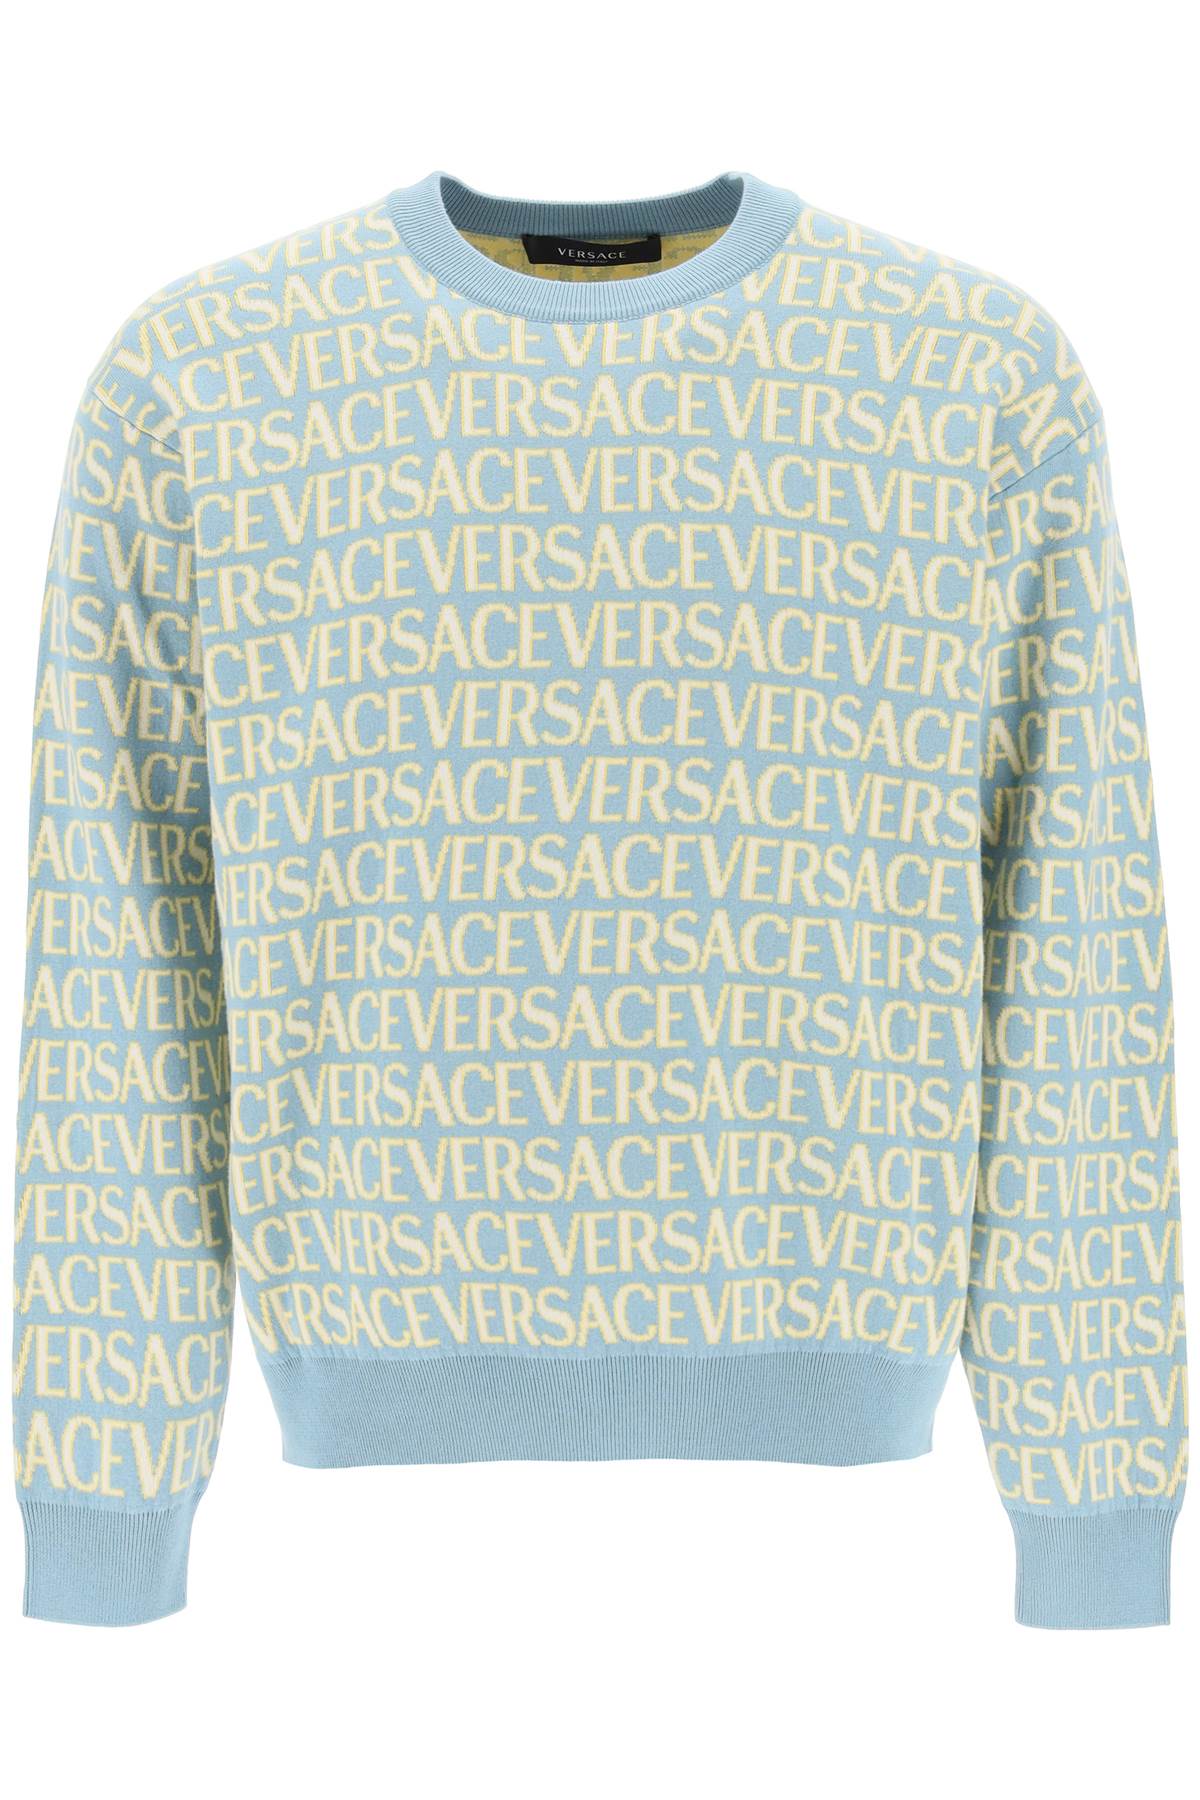 versace sport  light sweater anメンズ